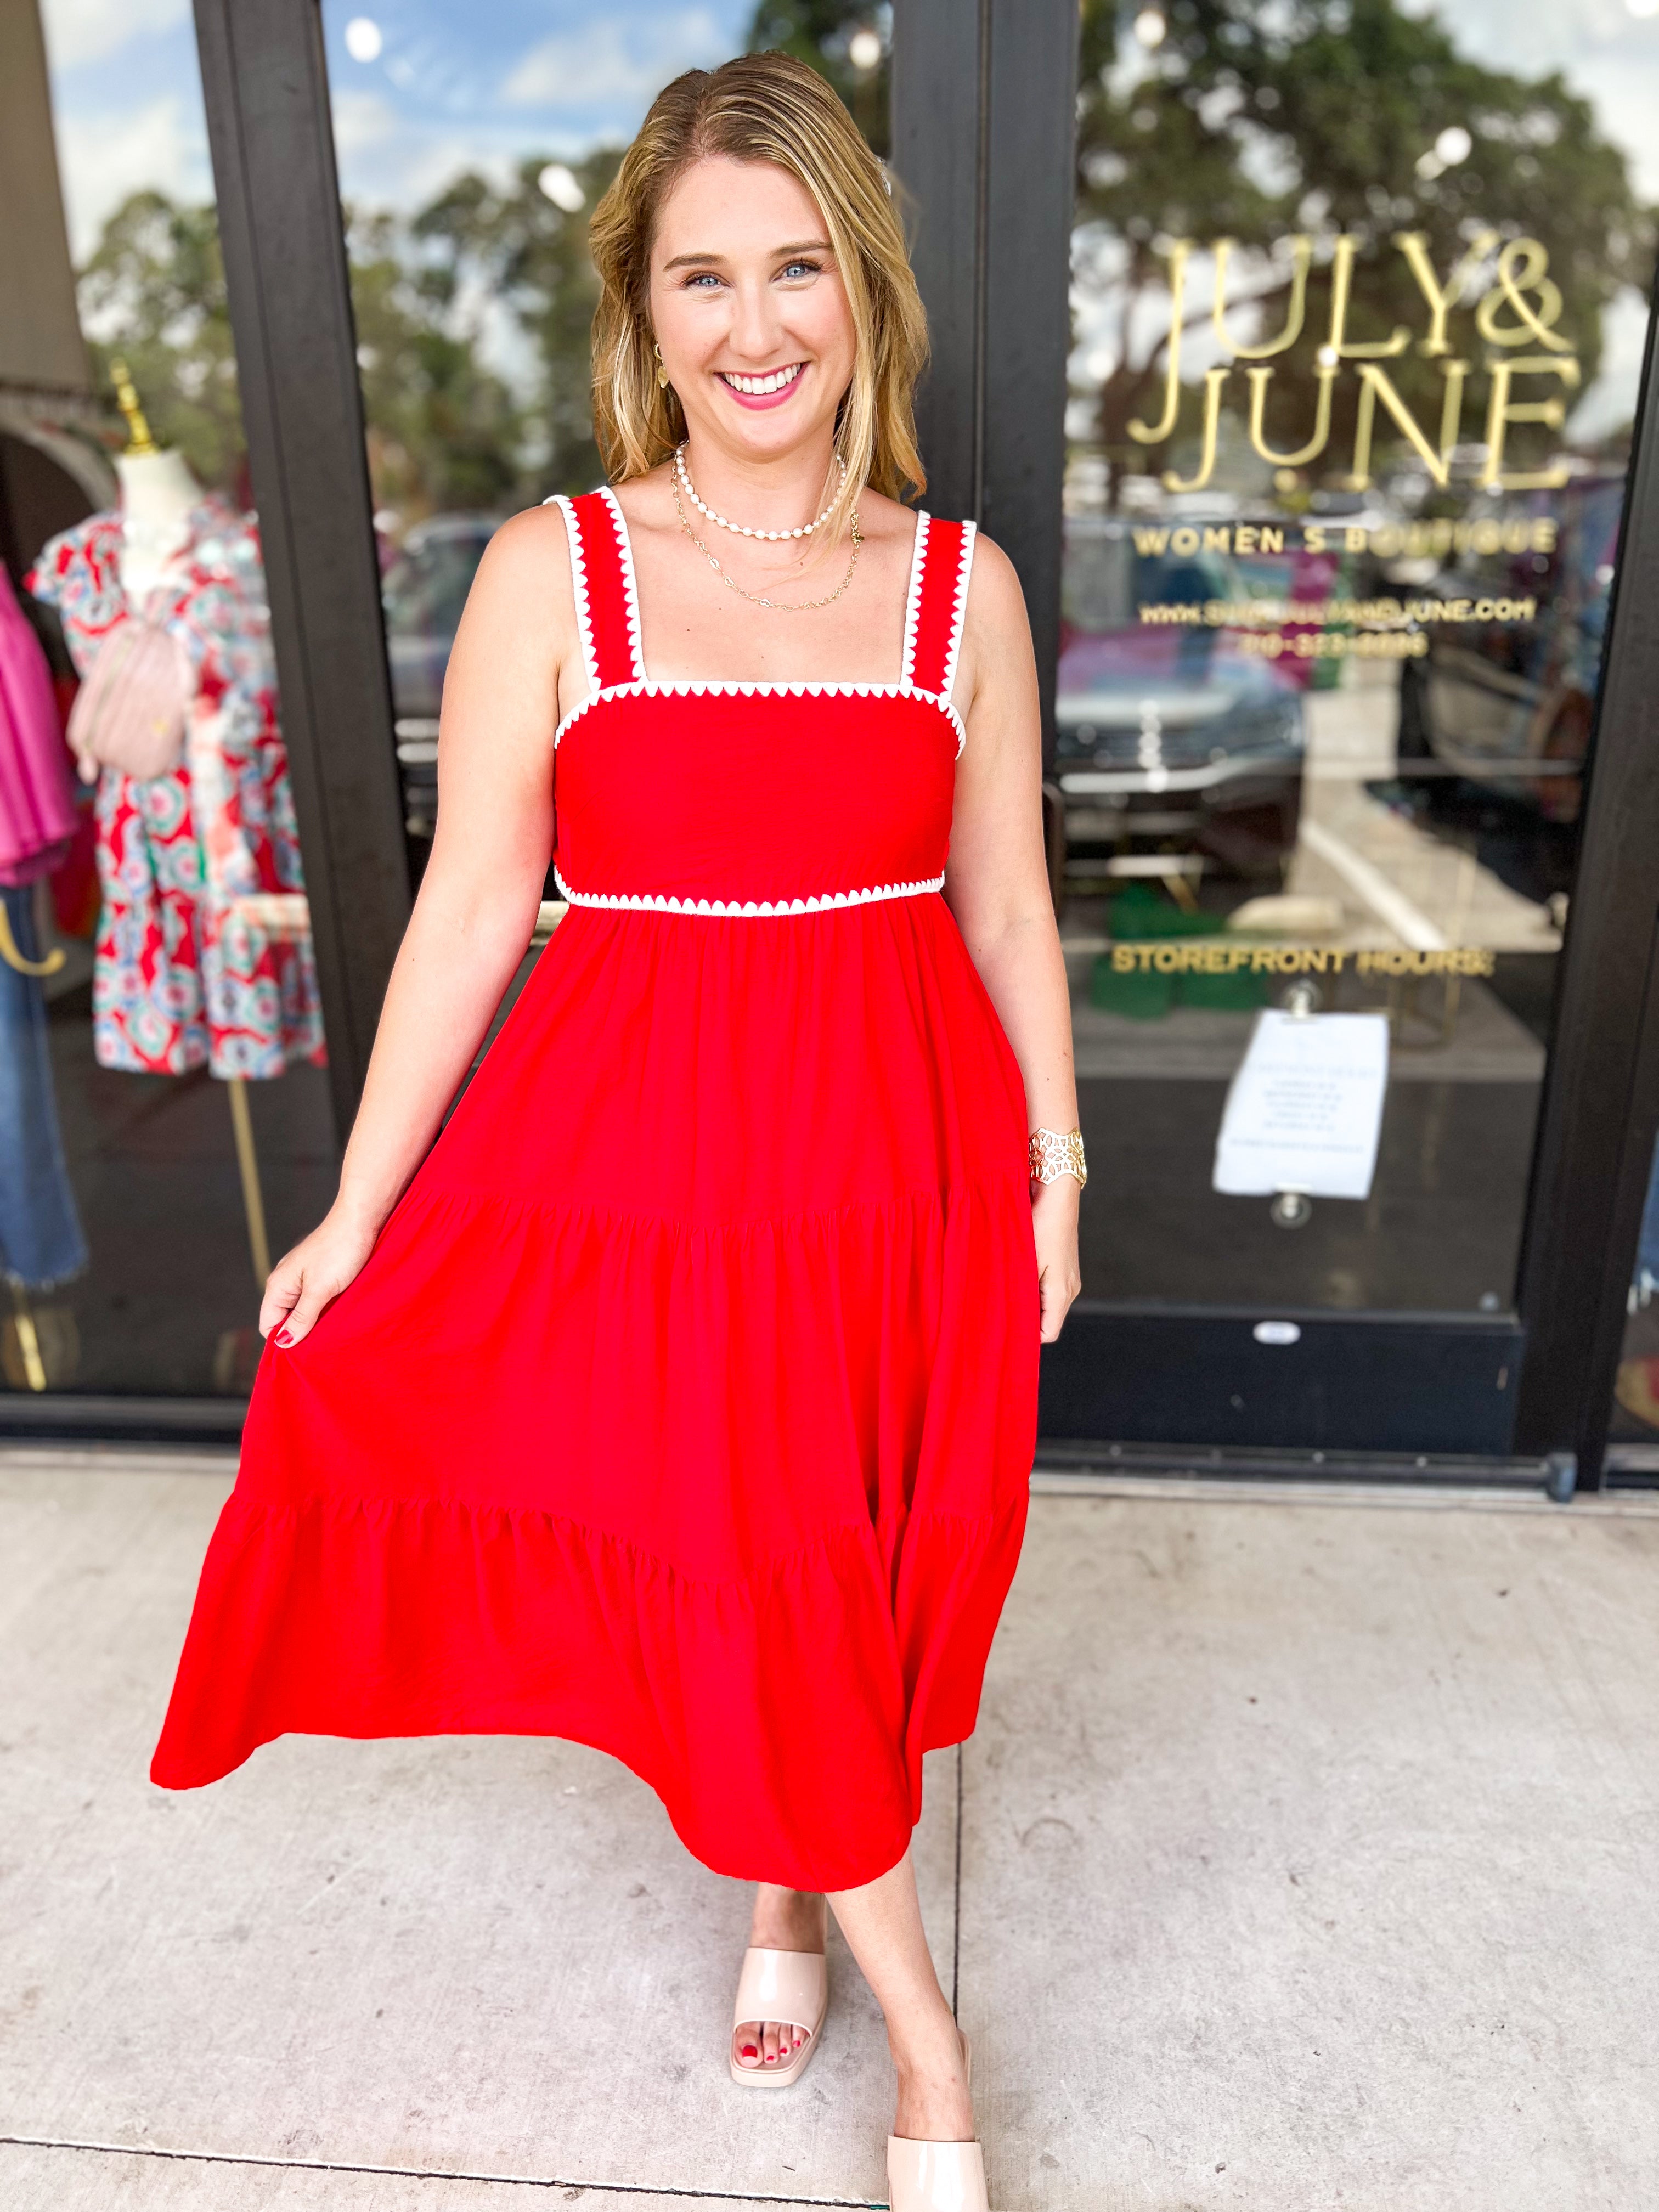 Red & Crochet Detail Midi Dress-500 Midi-ENTRO-July & June Women's Fashion Boutique Located in San Antonio, Texas